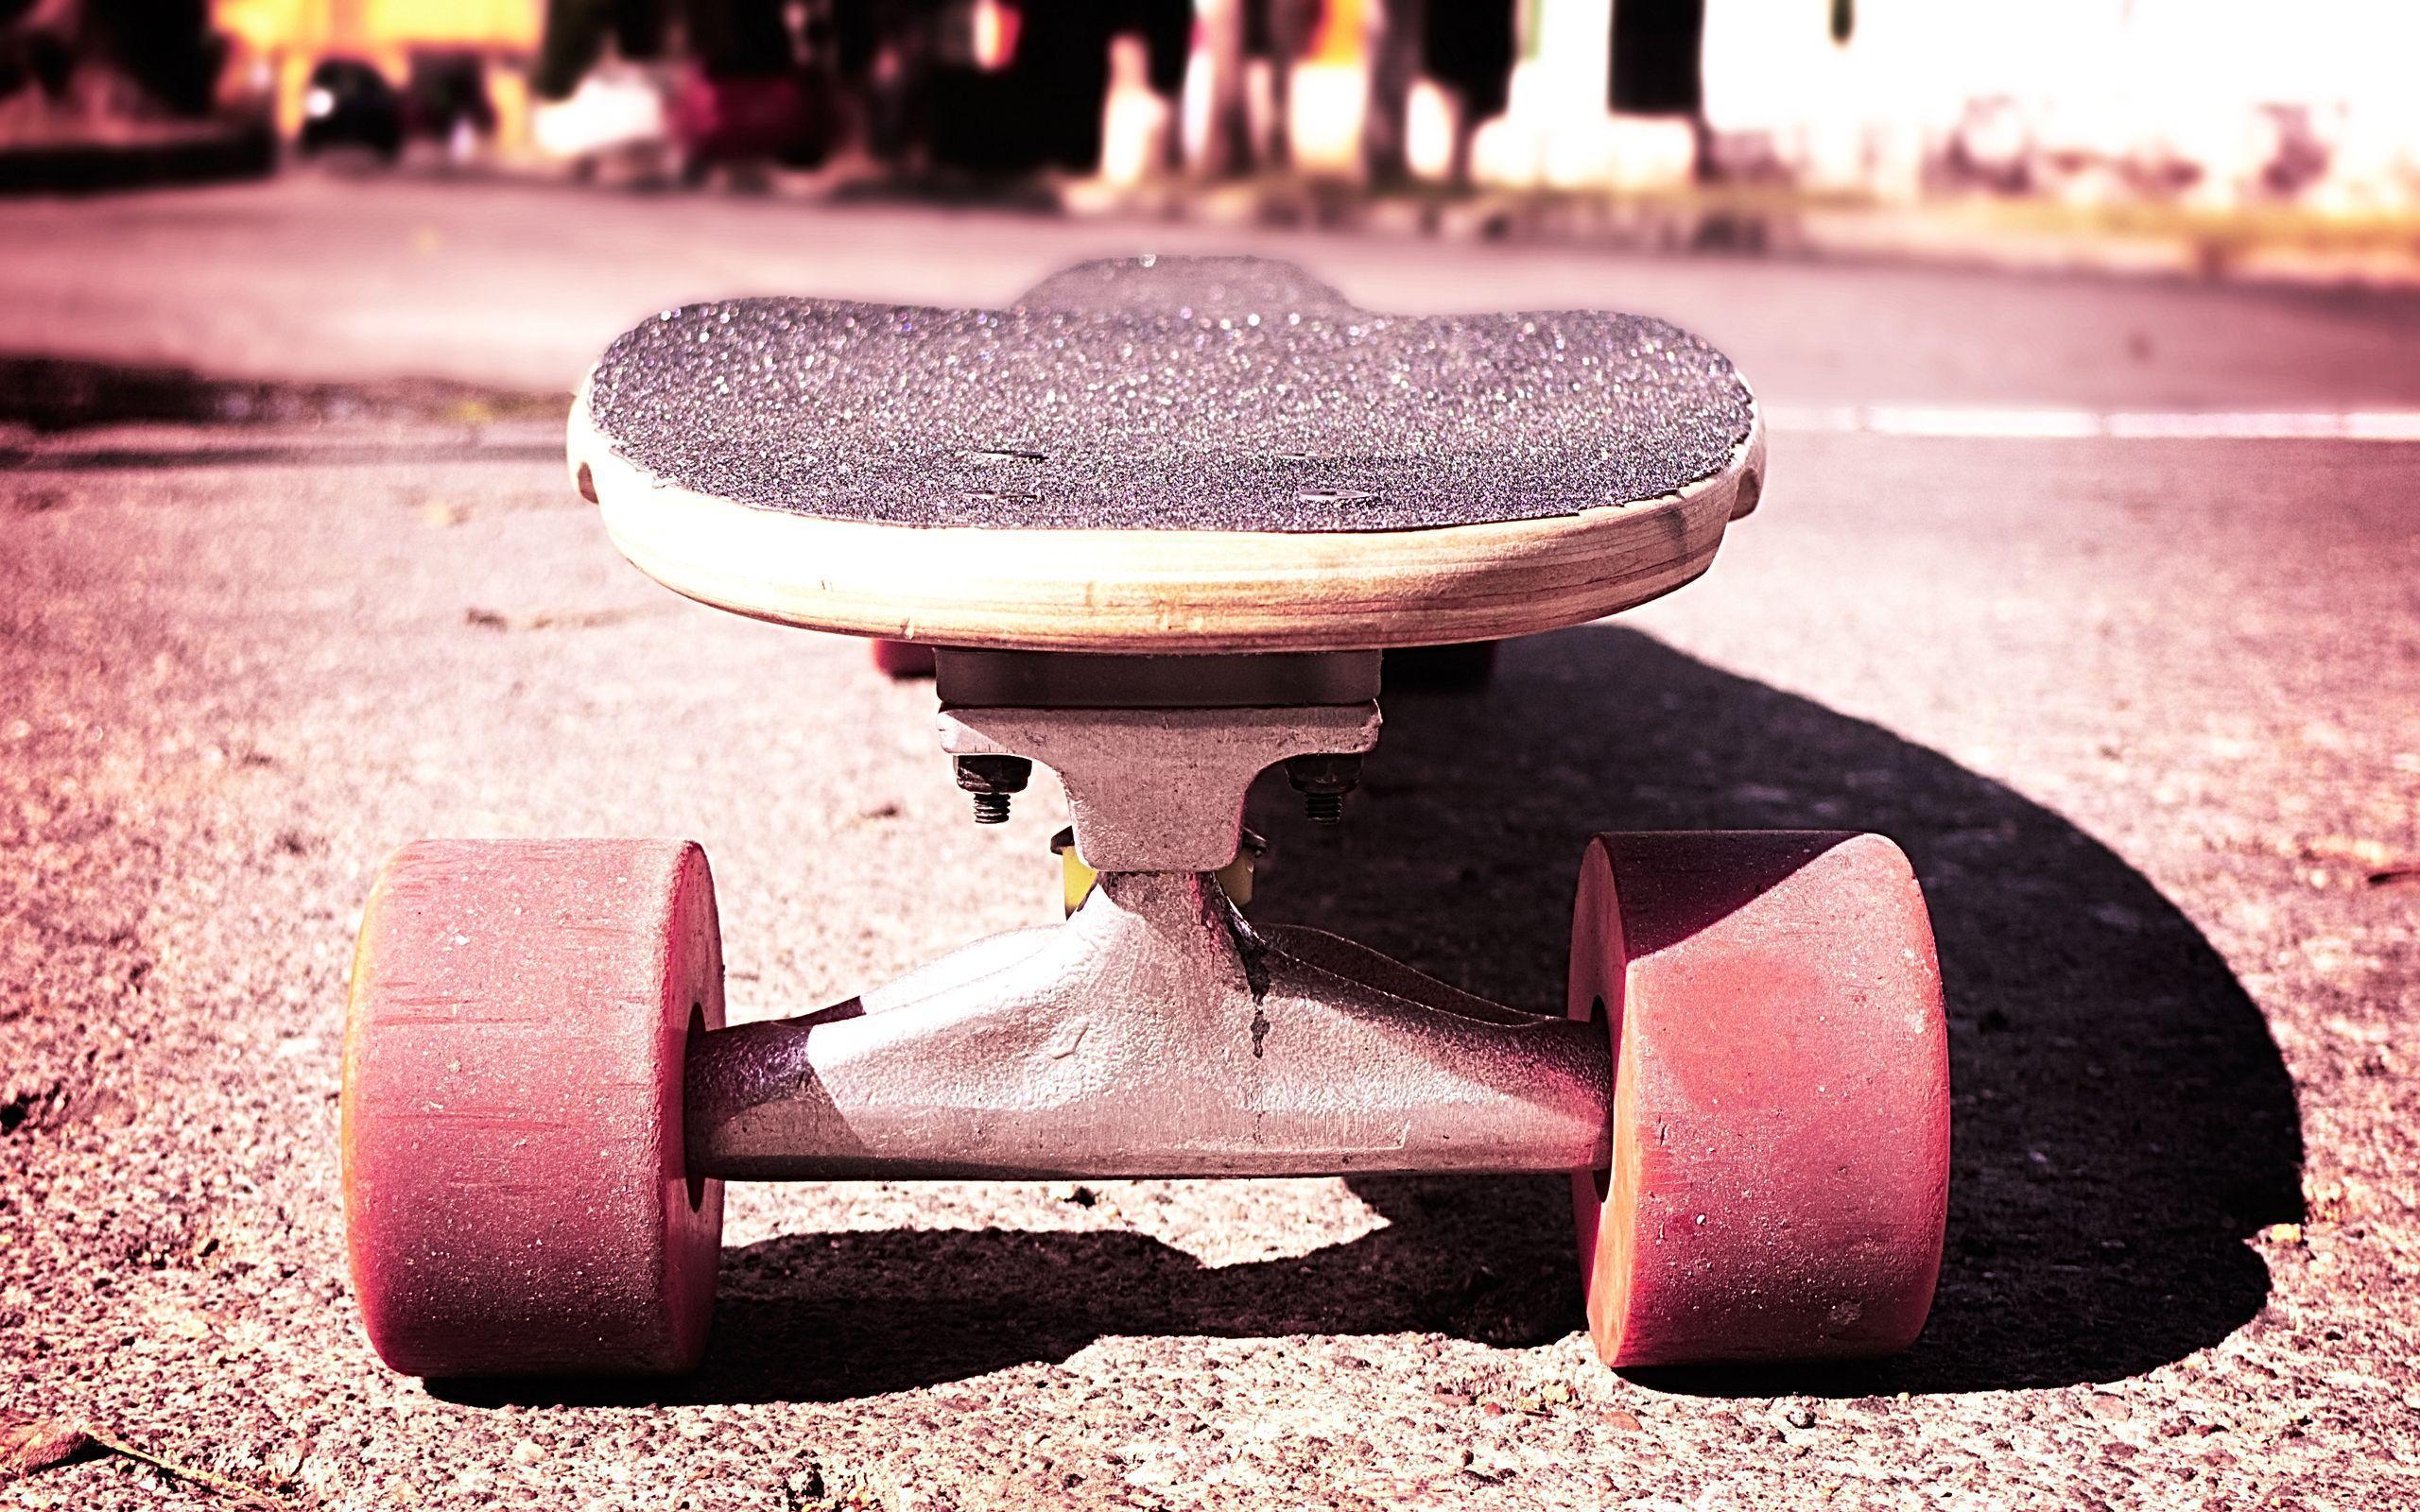 Skateboard Wallpaper HD